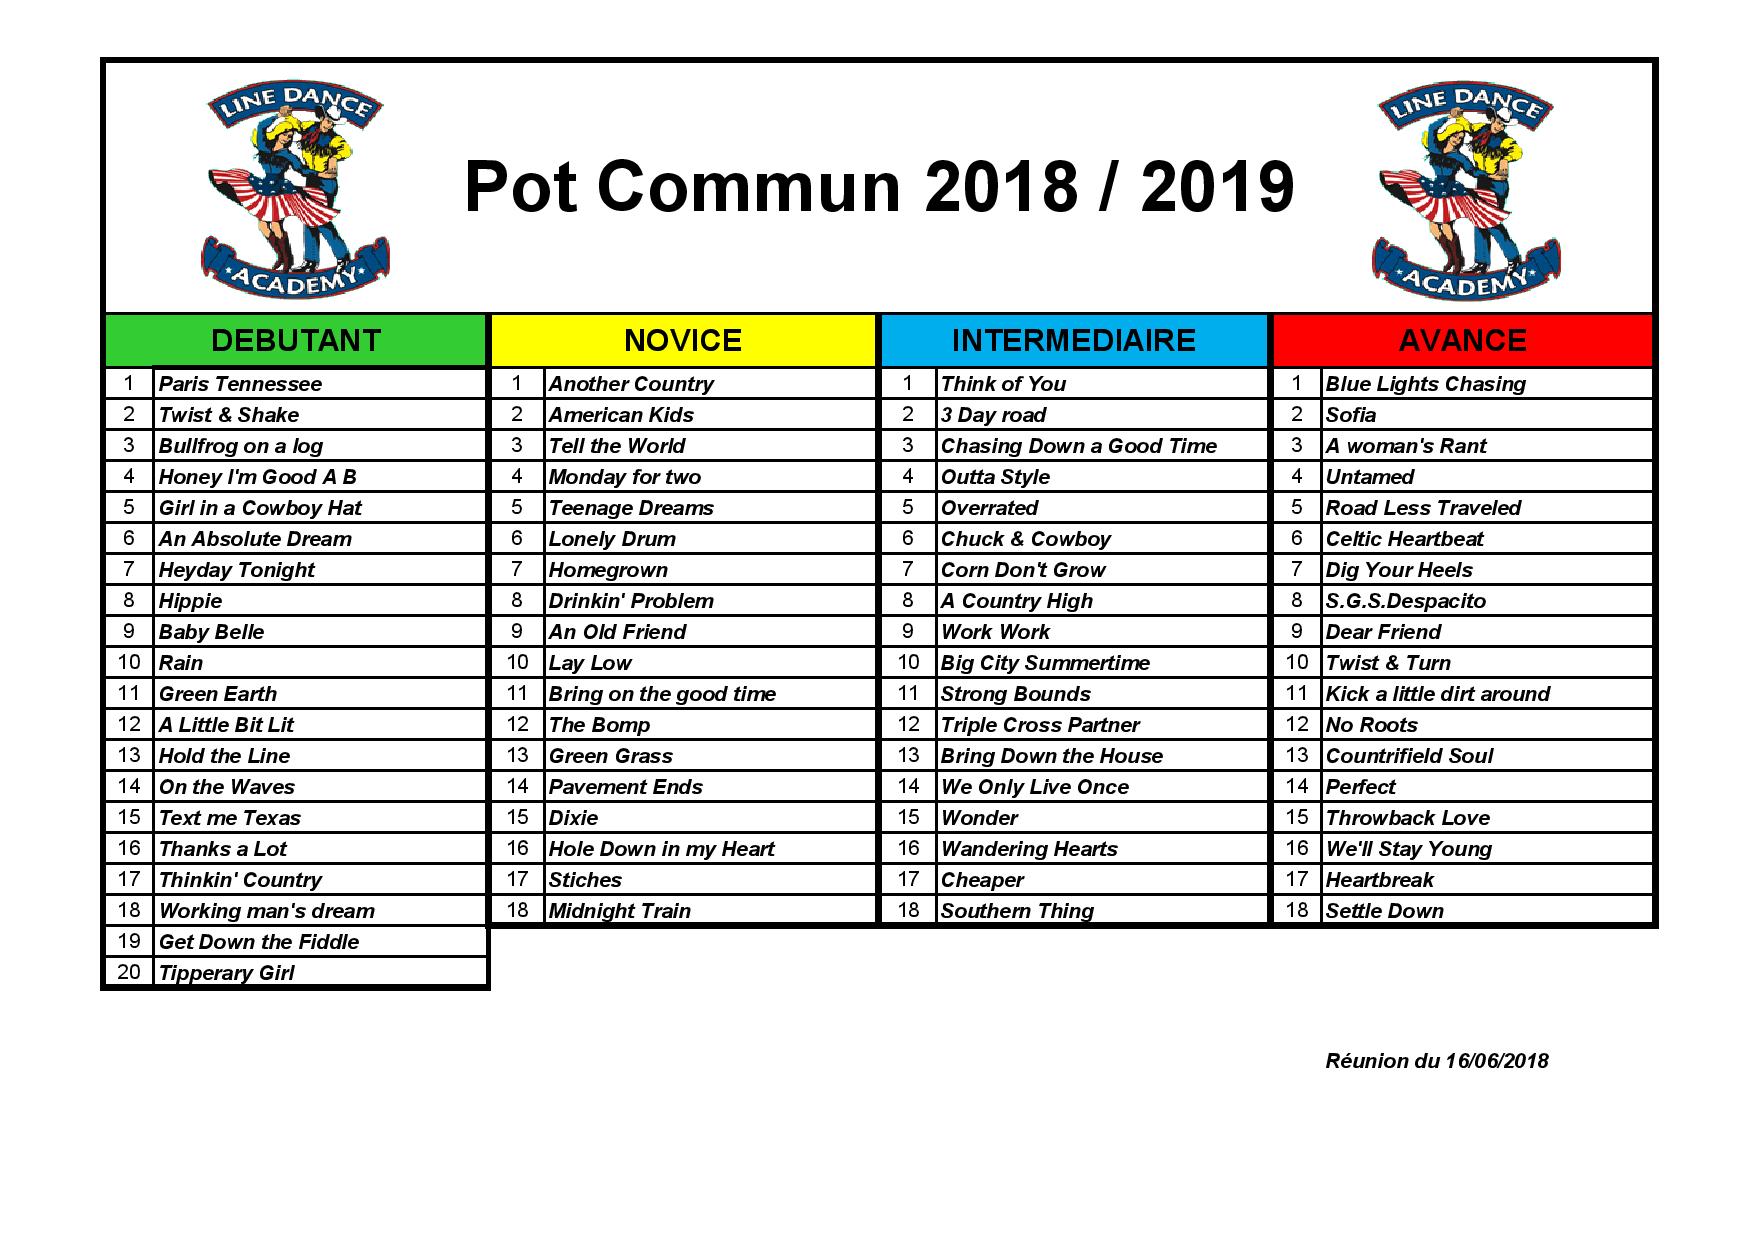 Pot Commun 2018/2019